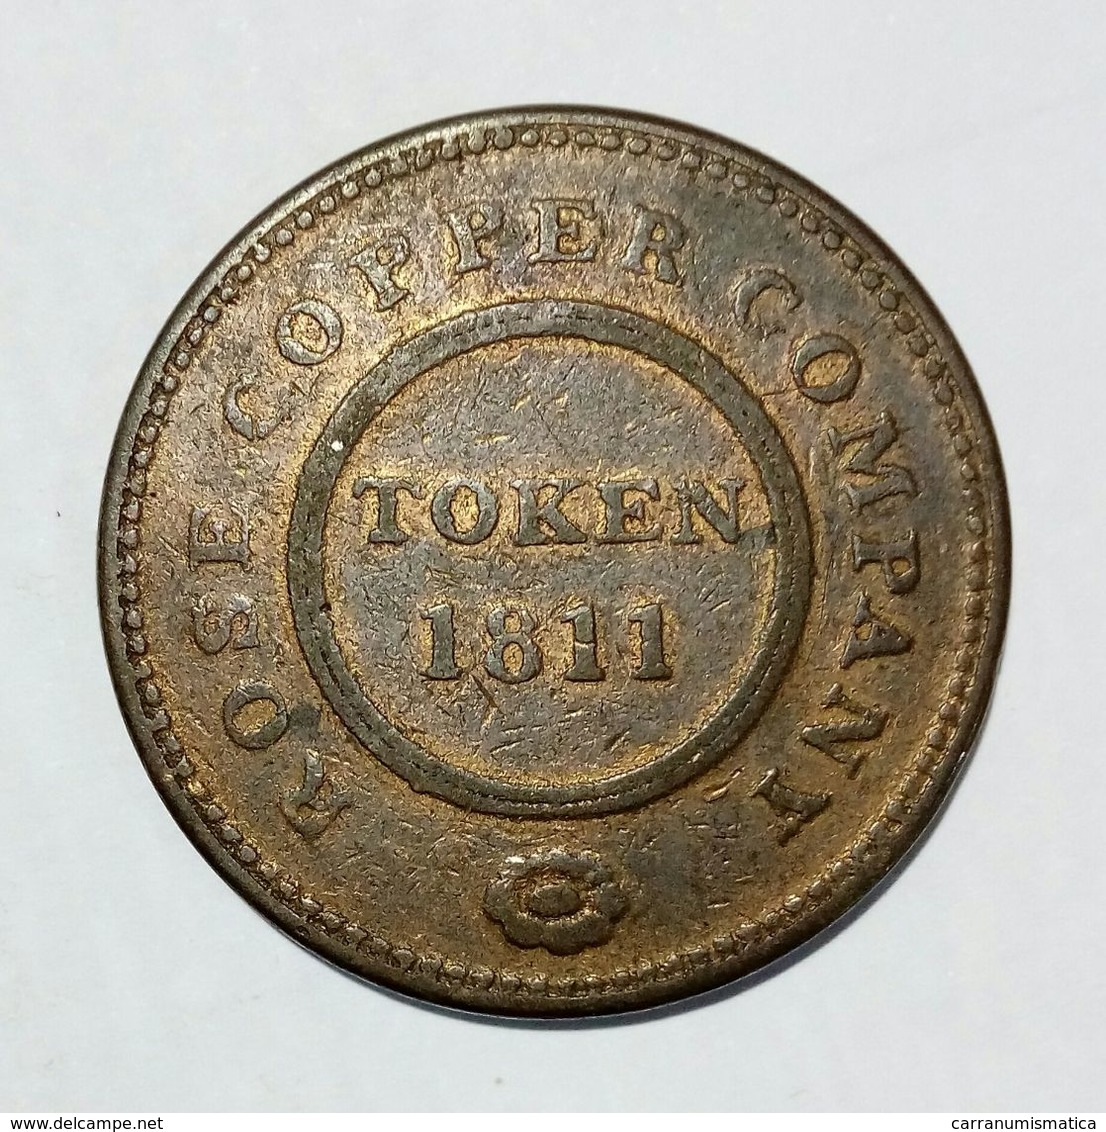 BIRMINGHAM & SWANSEA - ROSE COPPER COMPANY - HALF Penny Token ( 1811 ) / Copper - Monedas/ De Necesidad